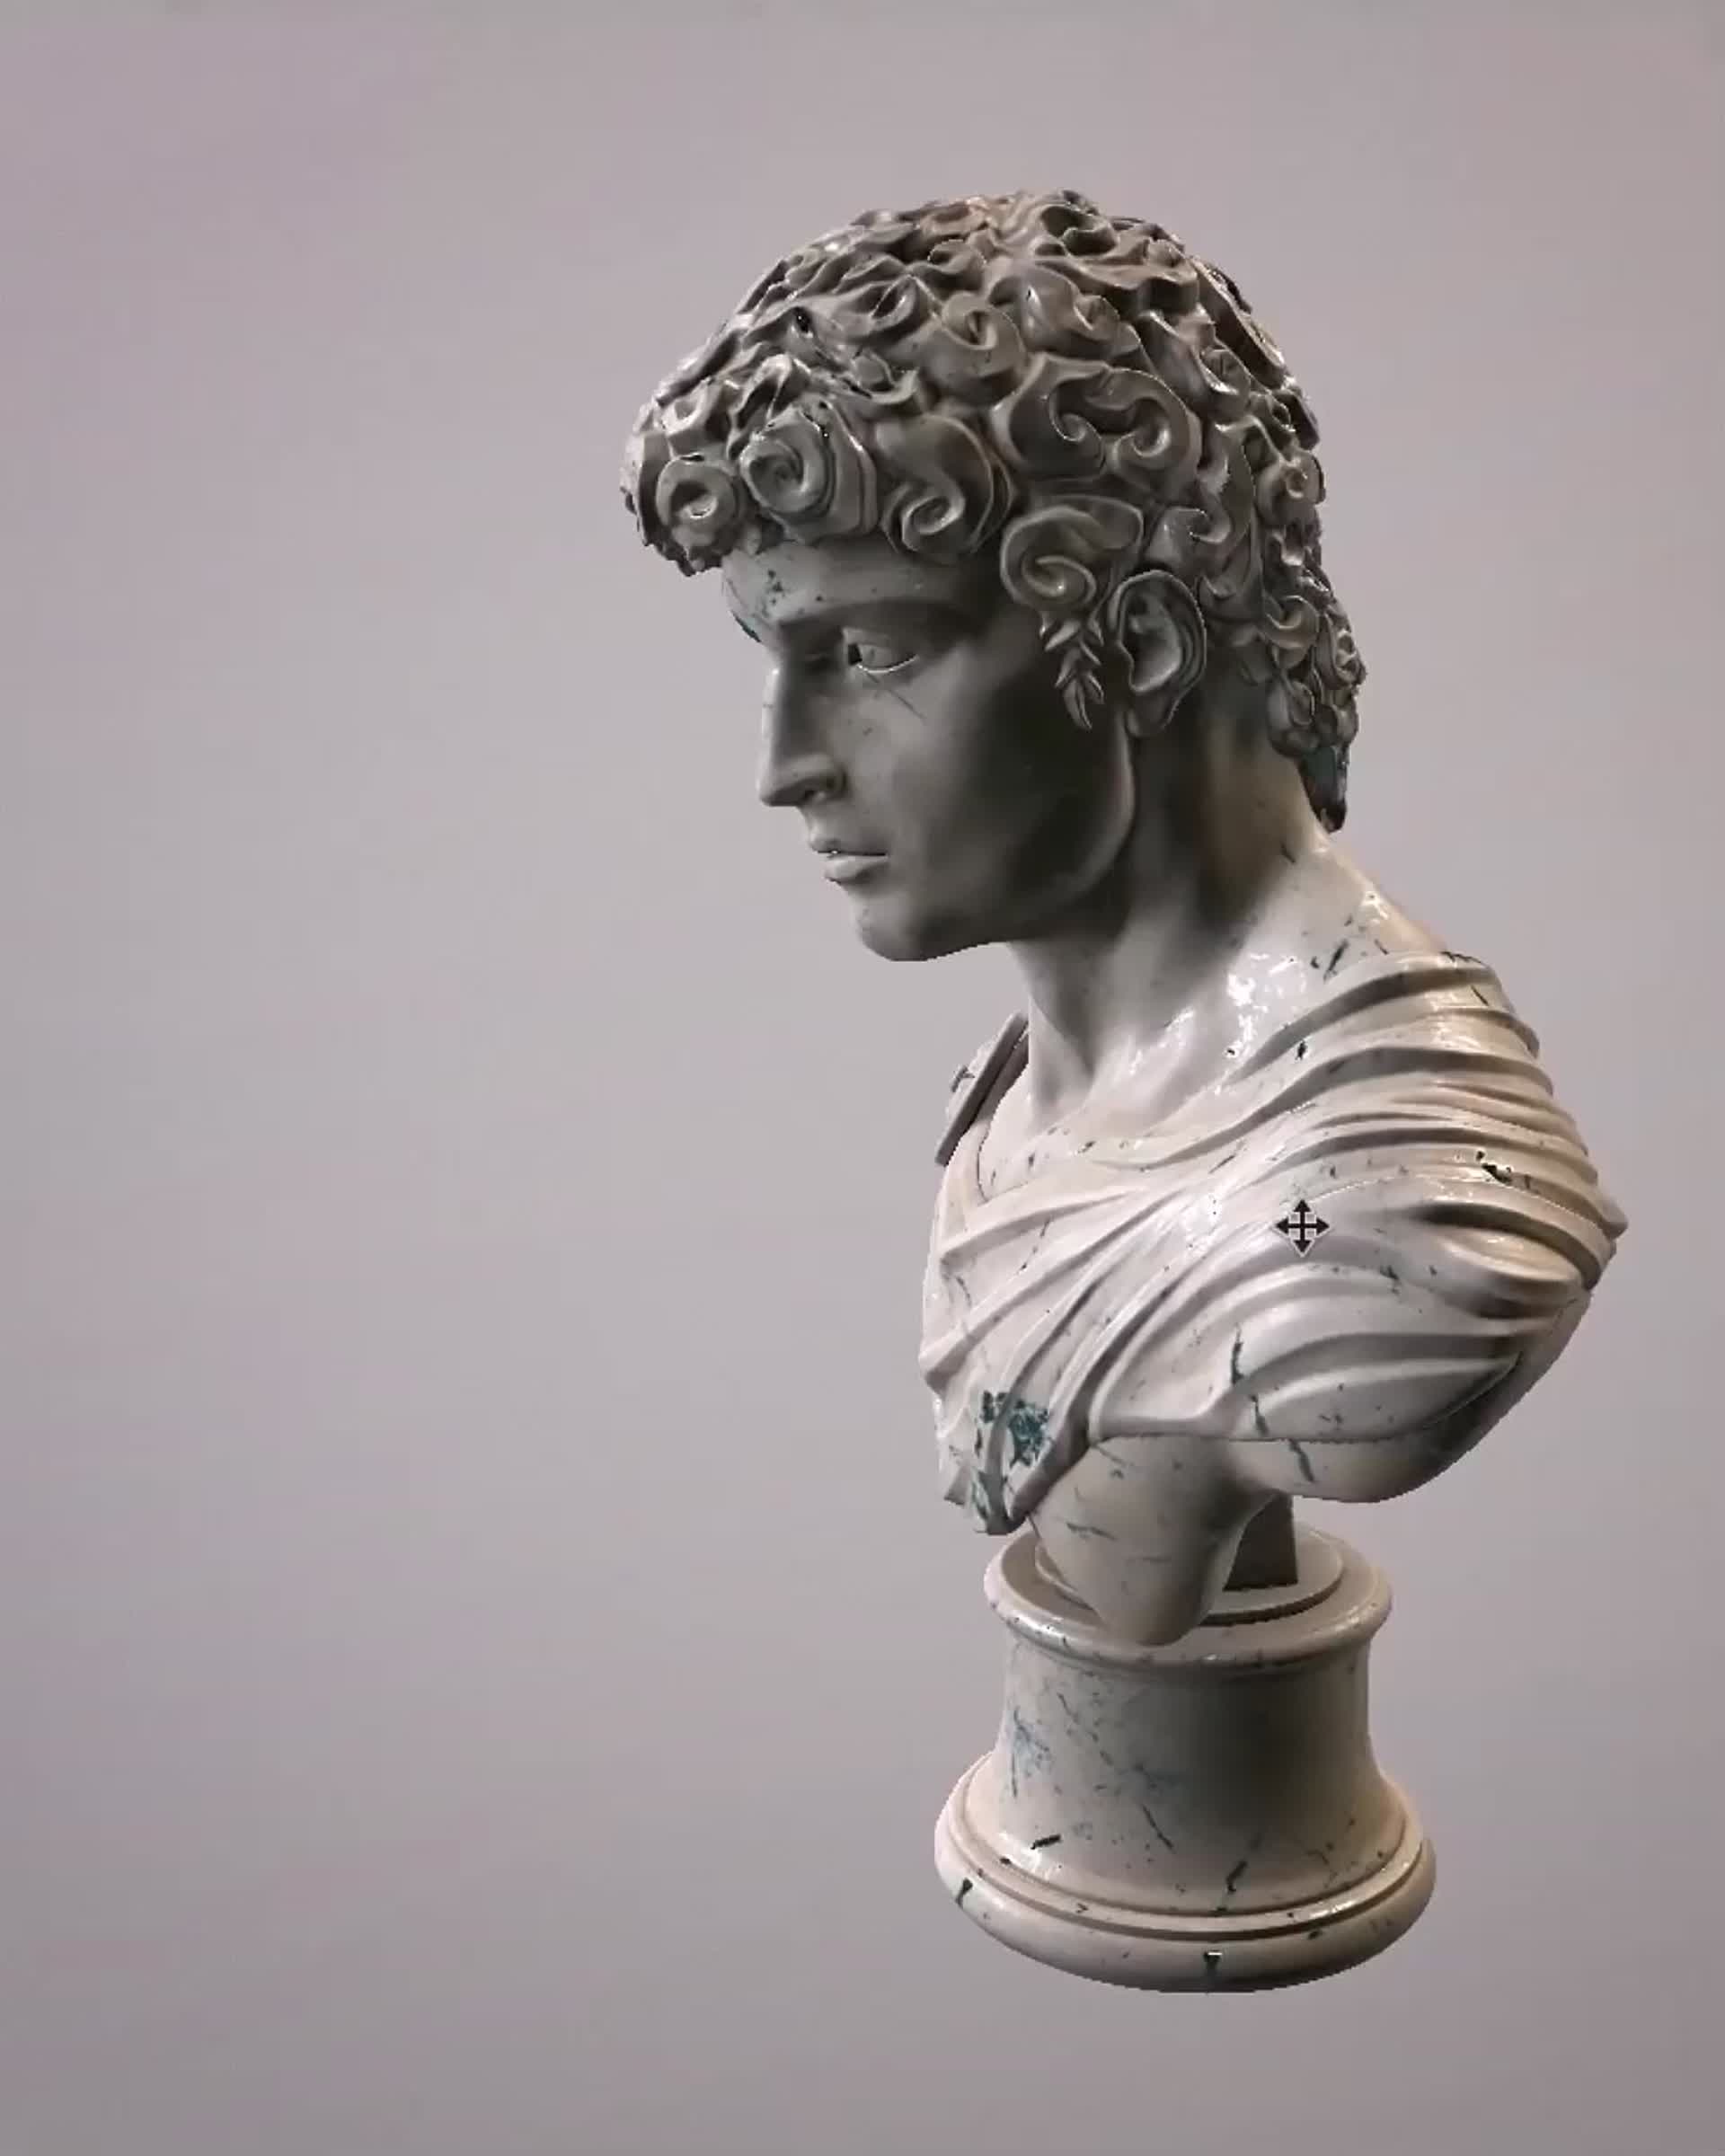 A bust of an ancient roman man - Greek statue